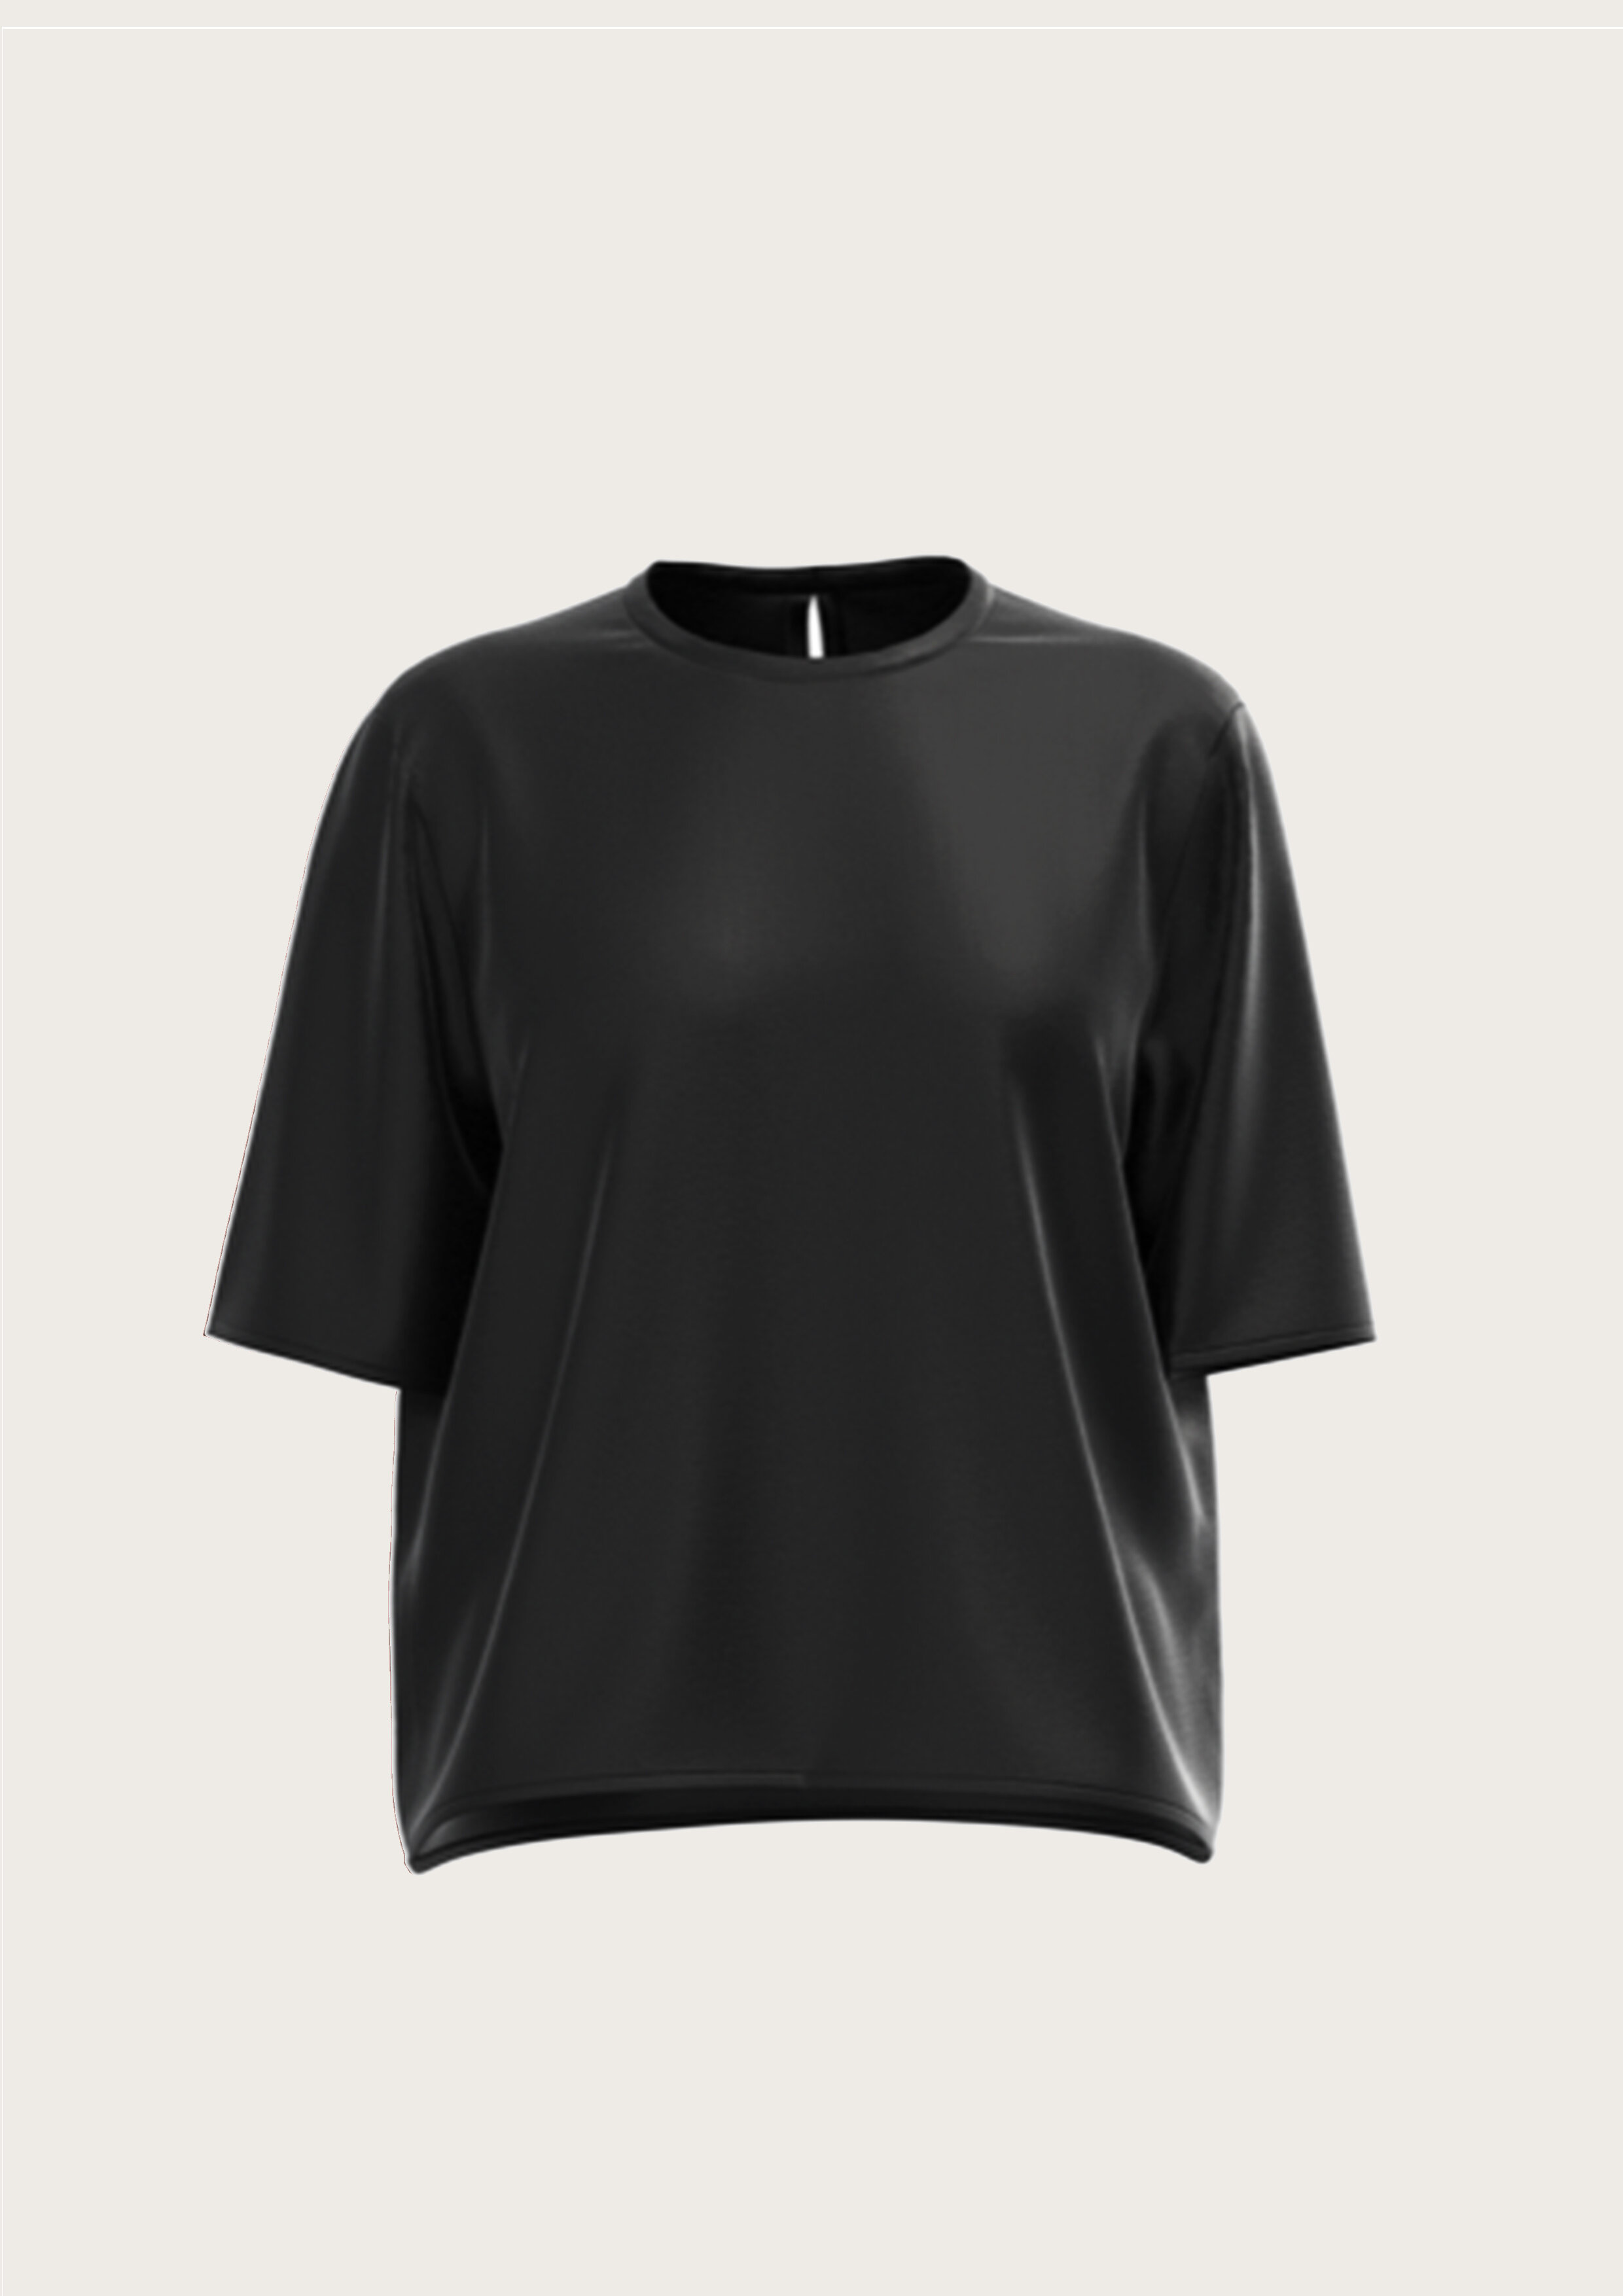 Silk T-Shirt in Black (Kopie)